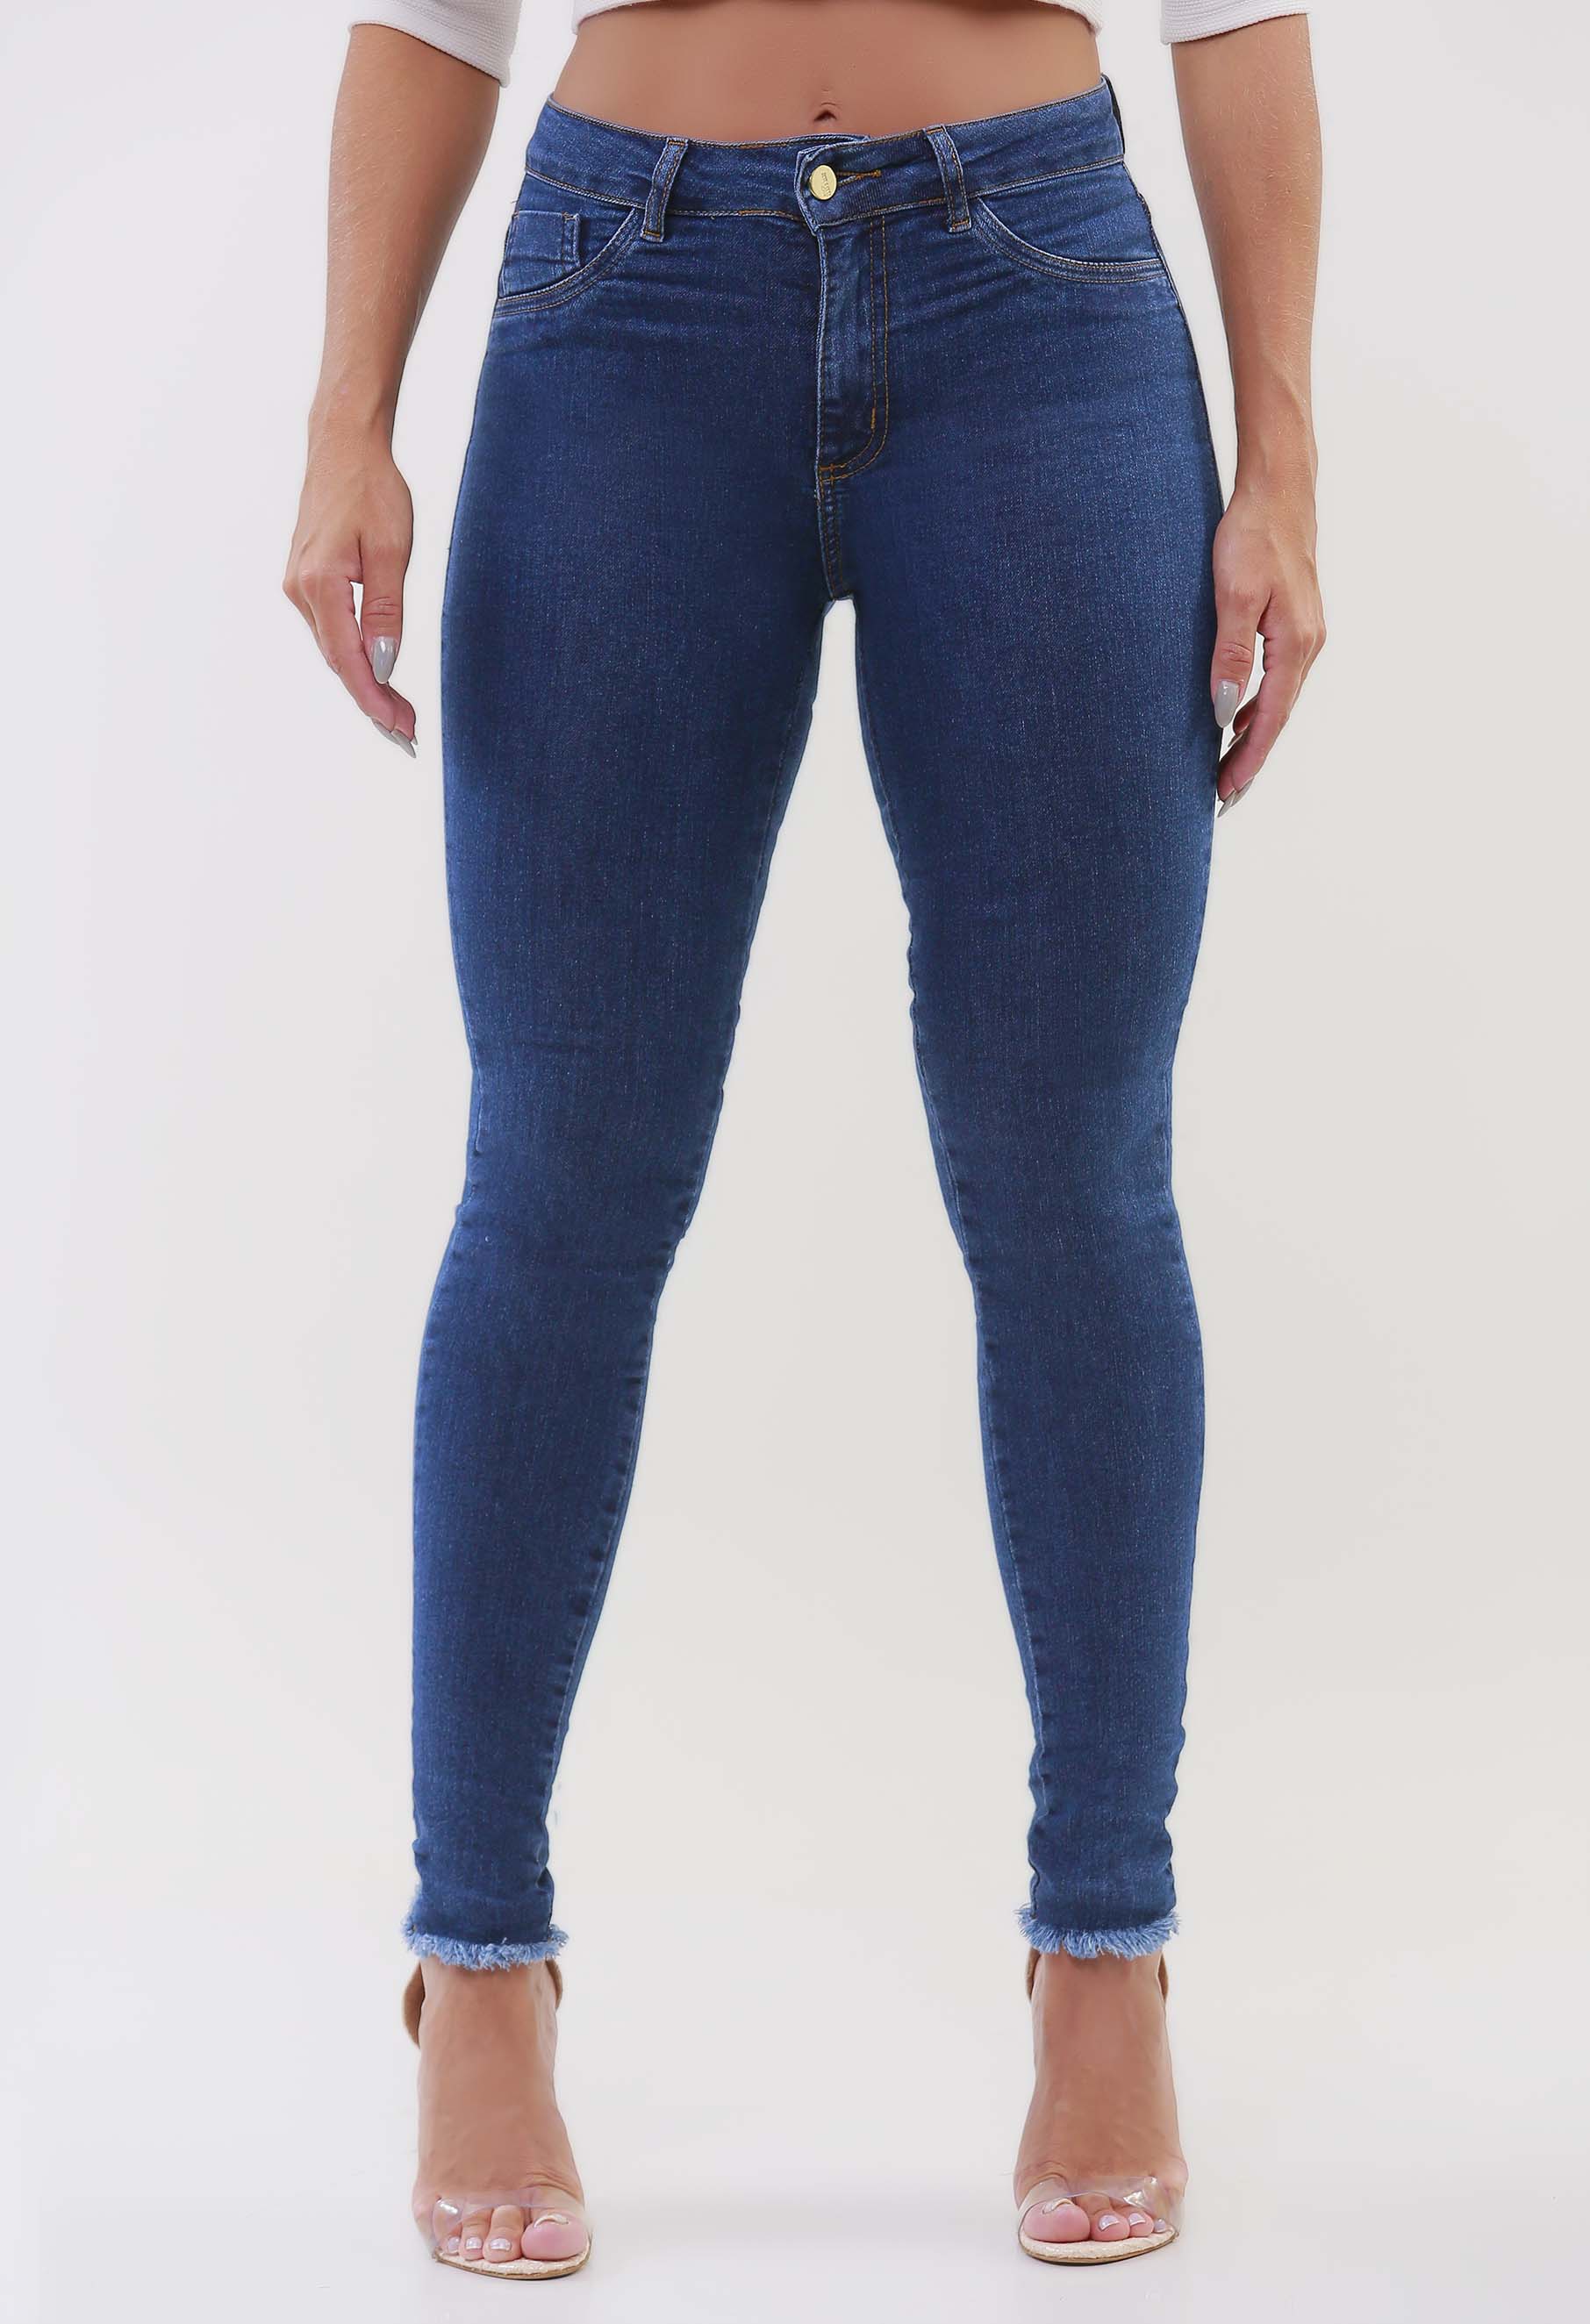 Leggings jeans falso feminino, leggins com estampa de bolso longo